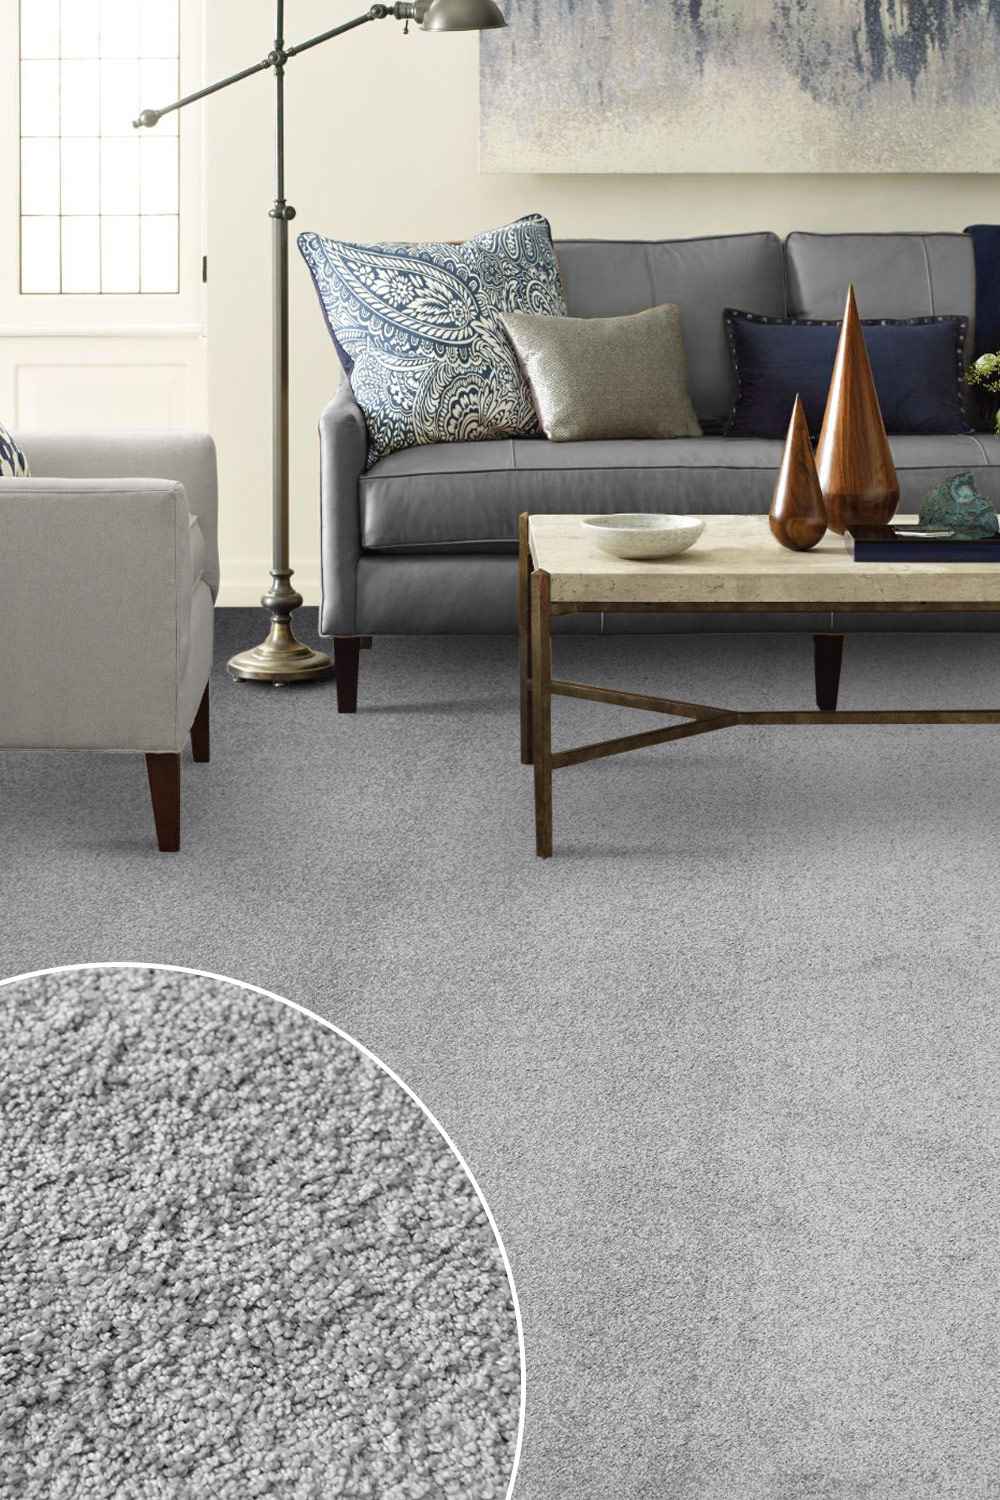 Metrážny koberec Ponza 34183 - Zvyšok 158x400 cm